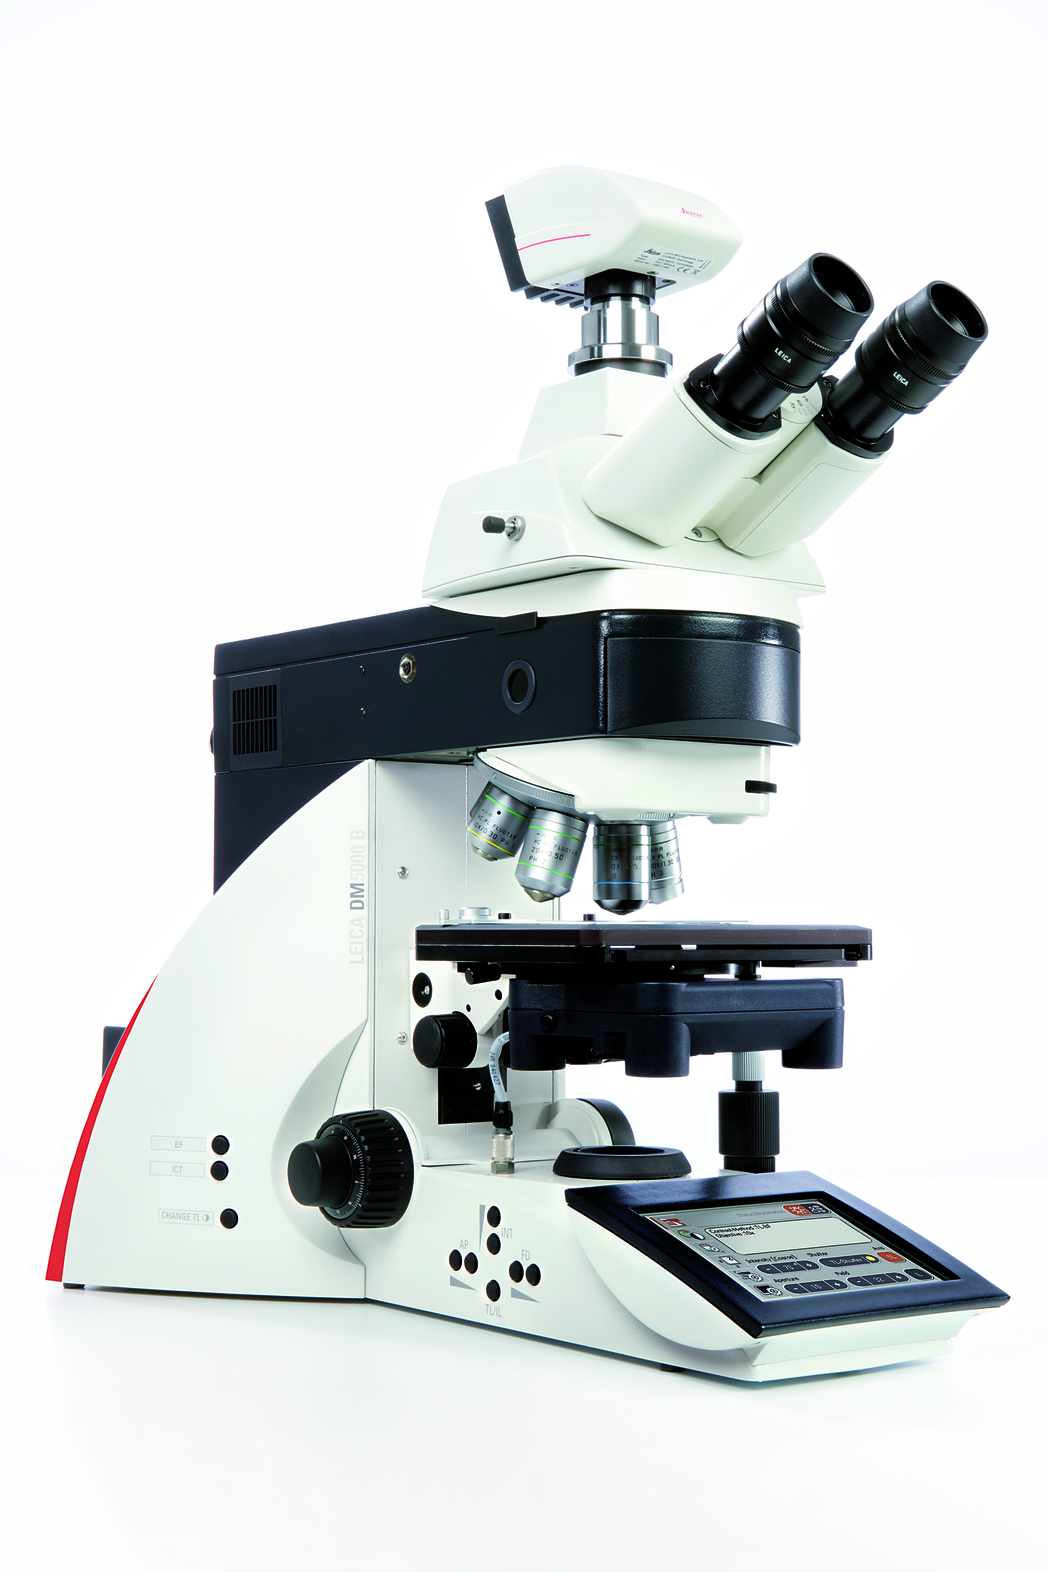 Das automatisierte Leica DM5000 B - ideal für morphologische Studien und die Lebendzellforschung - ist einfach und intuitiv zu bedienen.